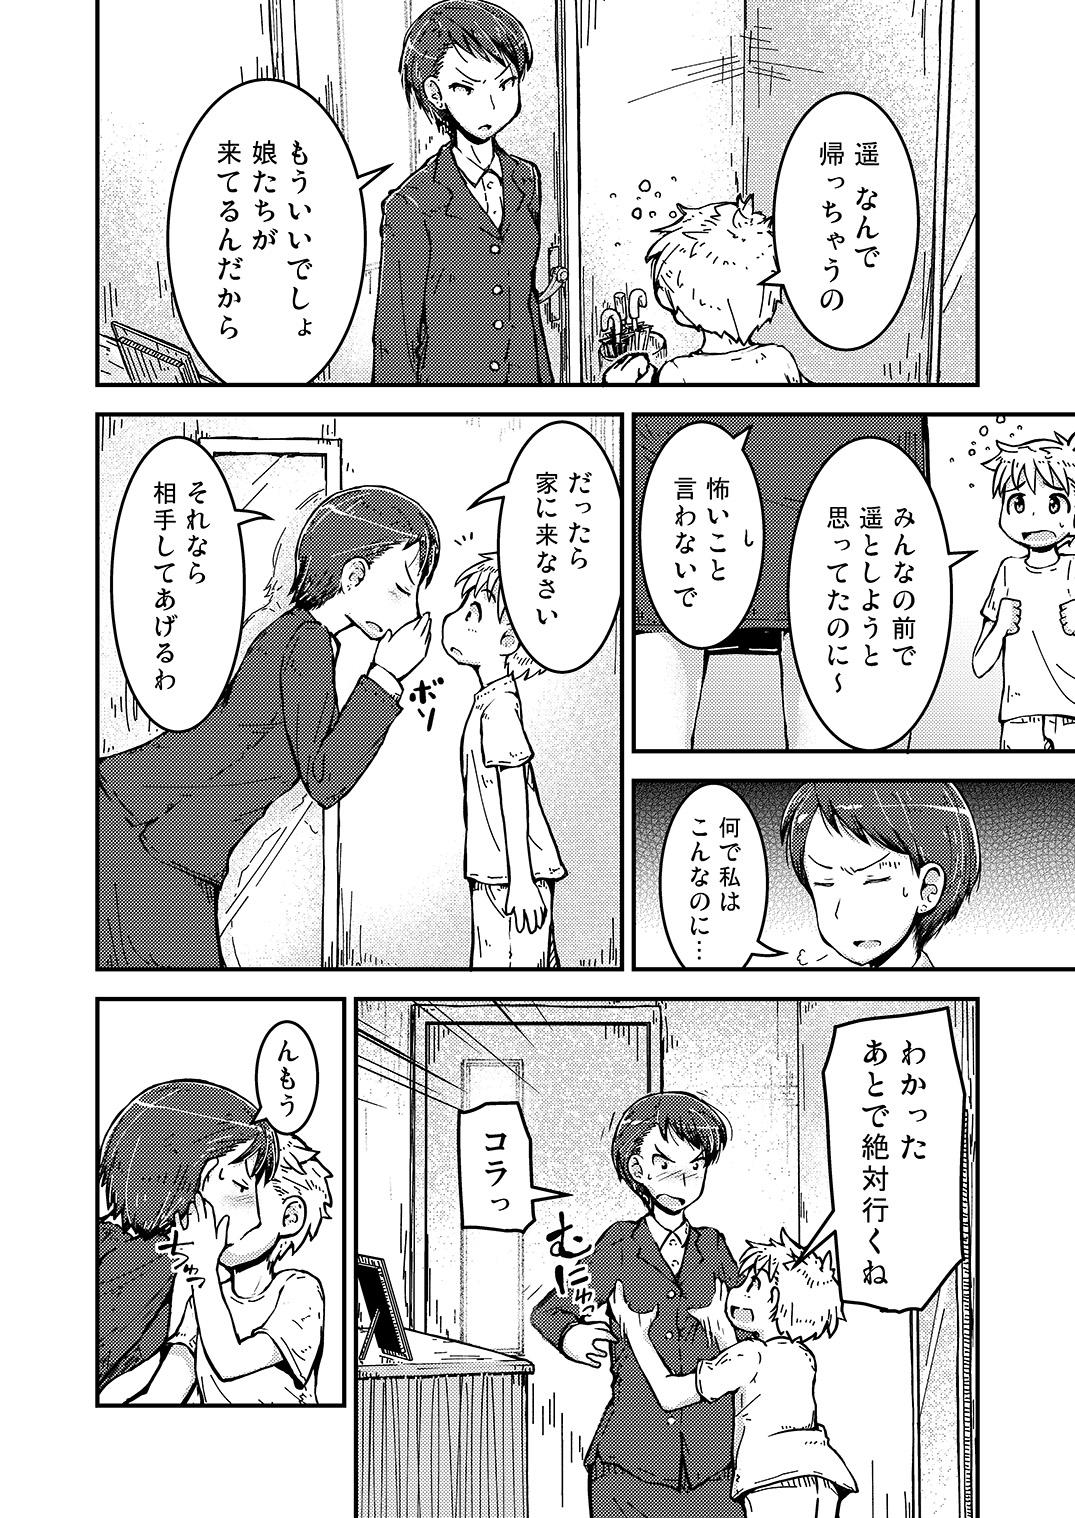 Masturbate Ane × otōto no 2-jō 3 satsume Cartoon - Page 4